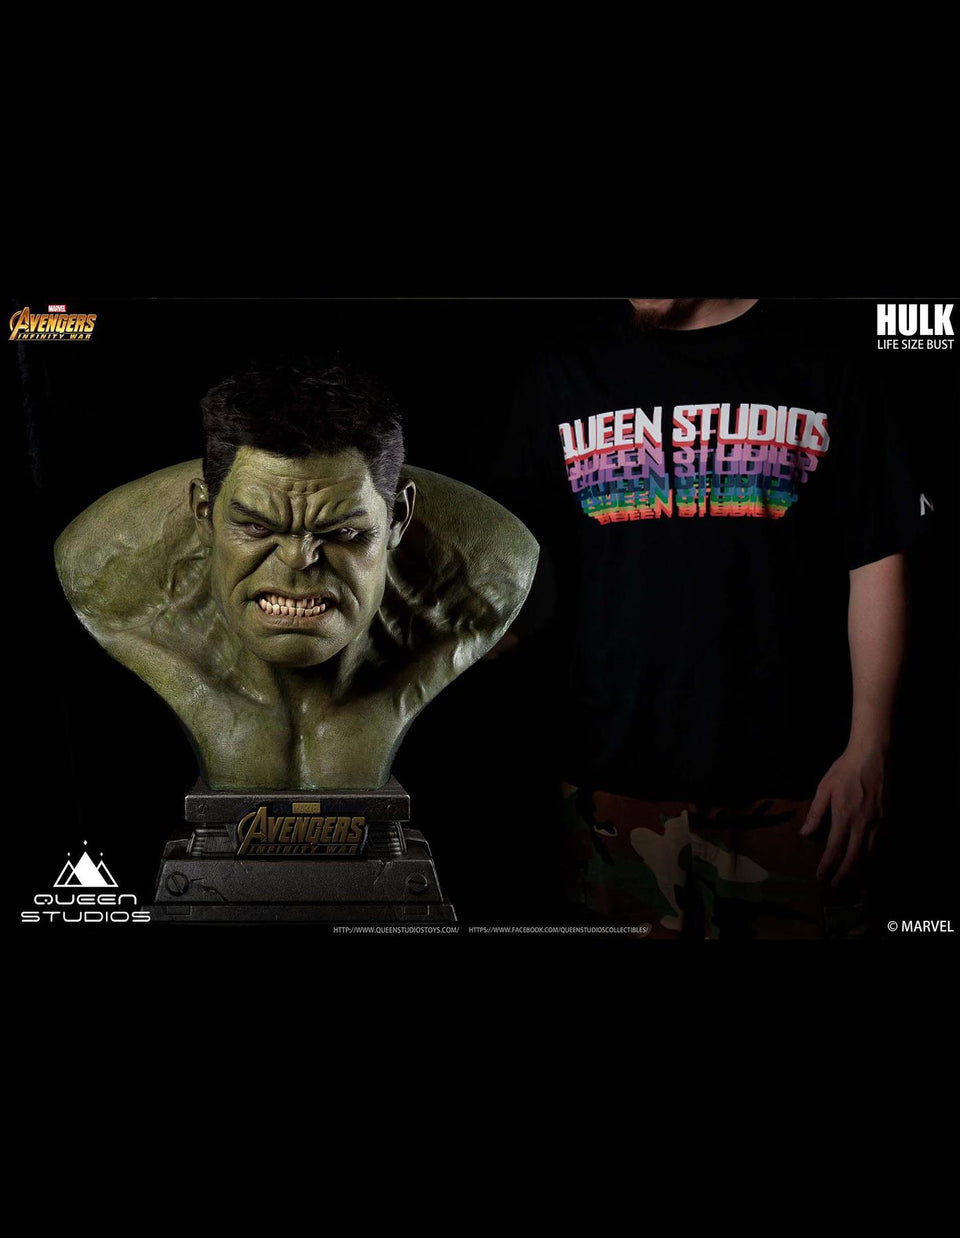 Queen Studios Hulk